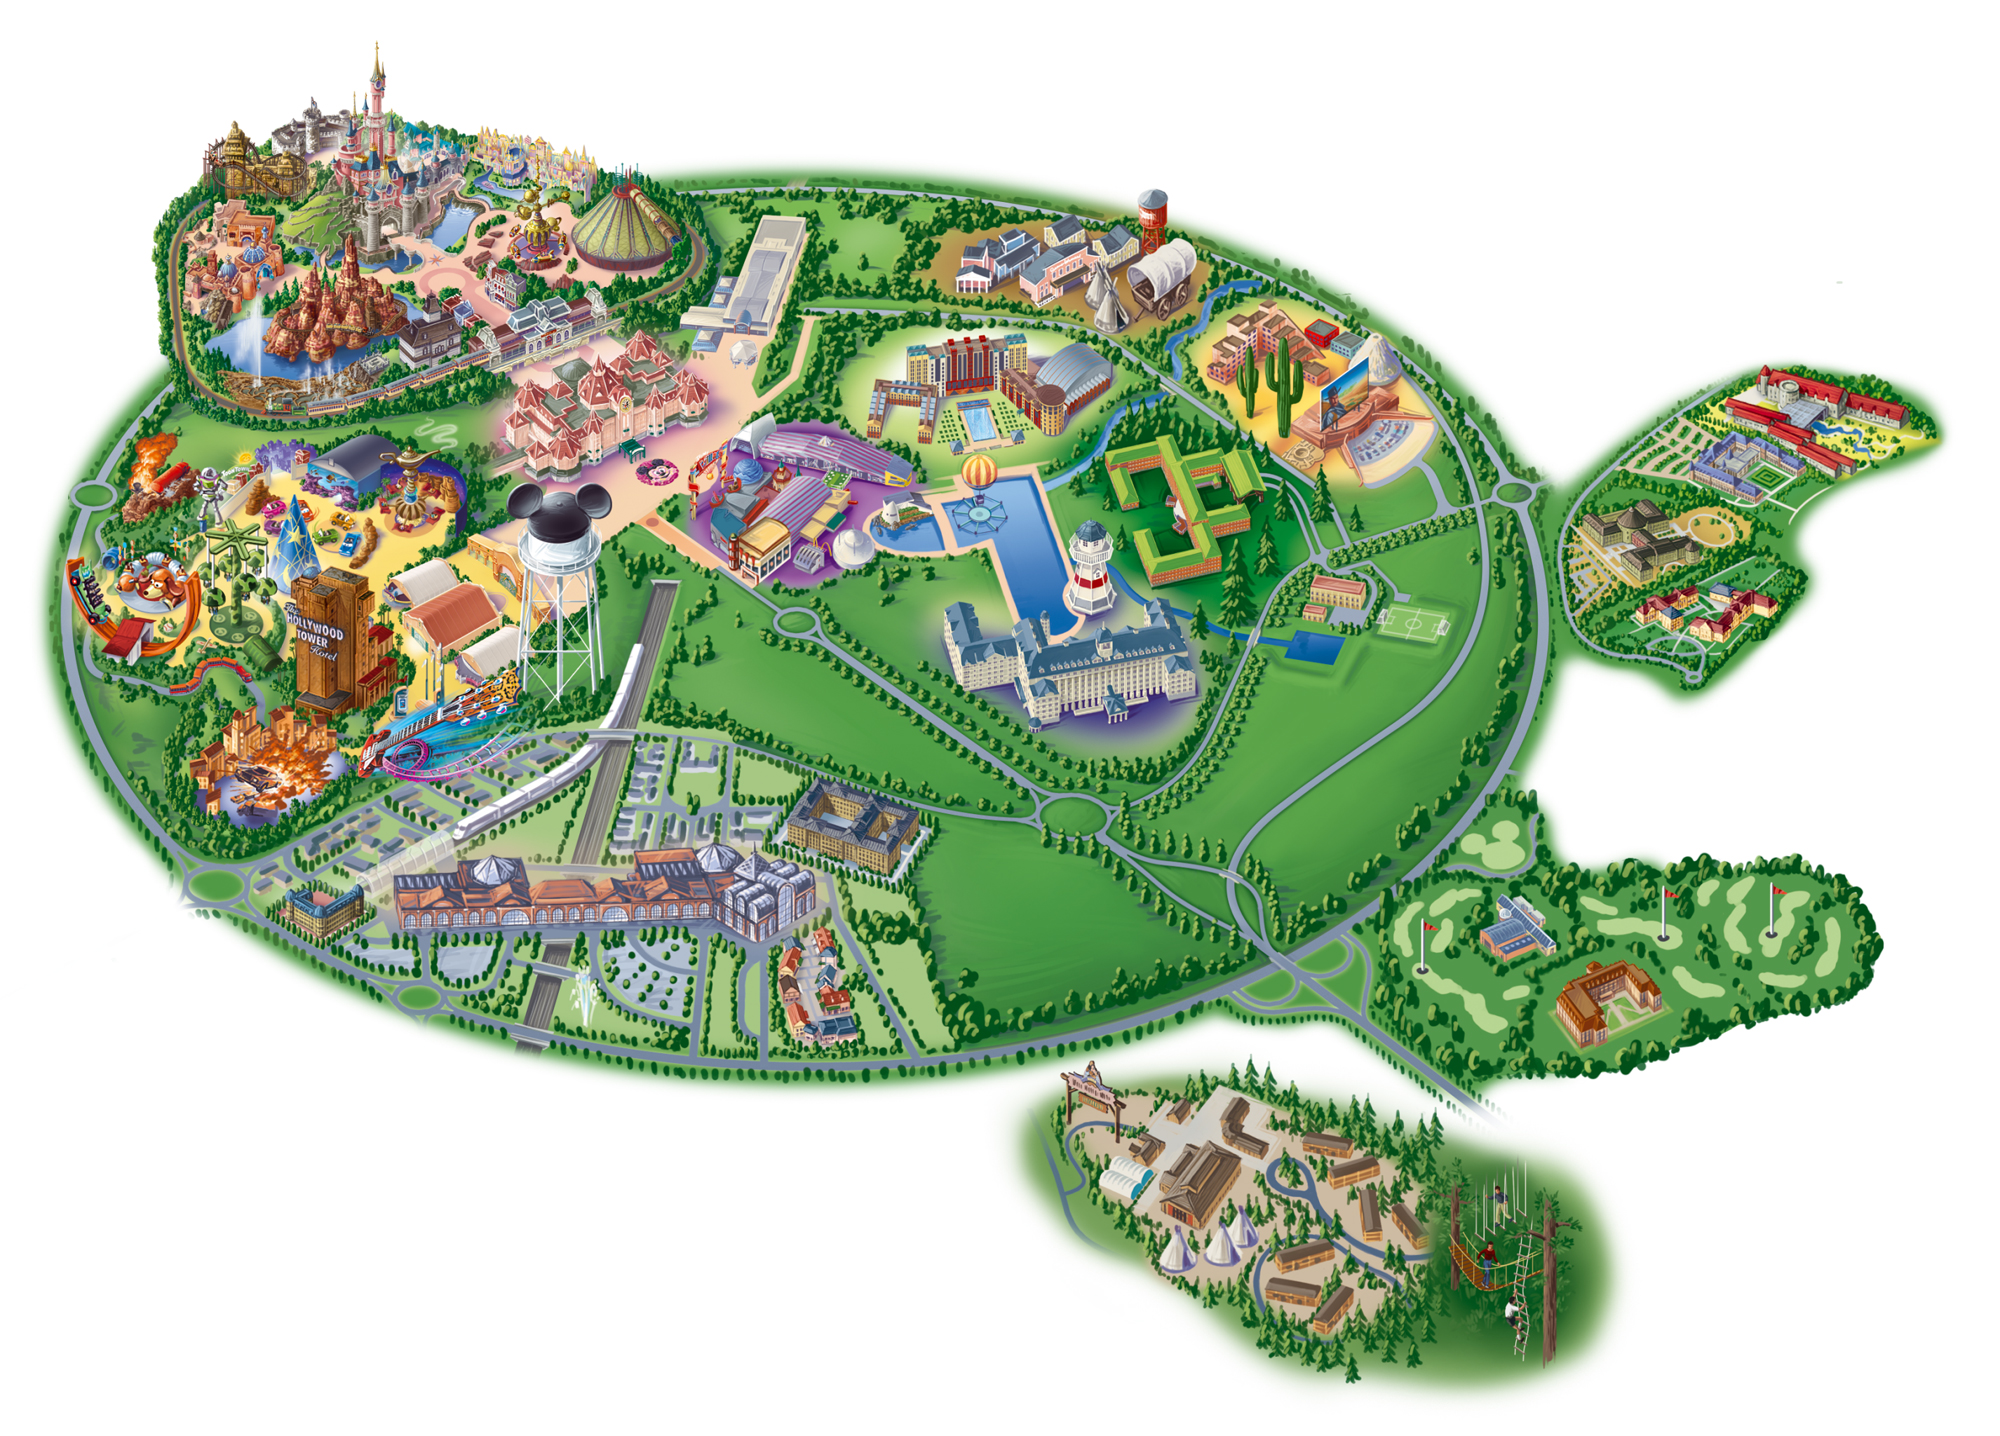 disneyland paris map 2020 pdf Map Of Disneyland Paris And Walt Disney Studios disneyland paris map 2020 pdf